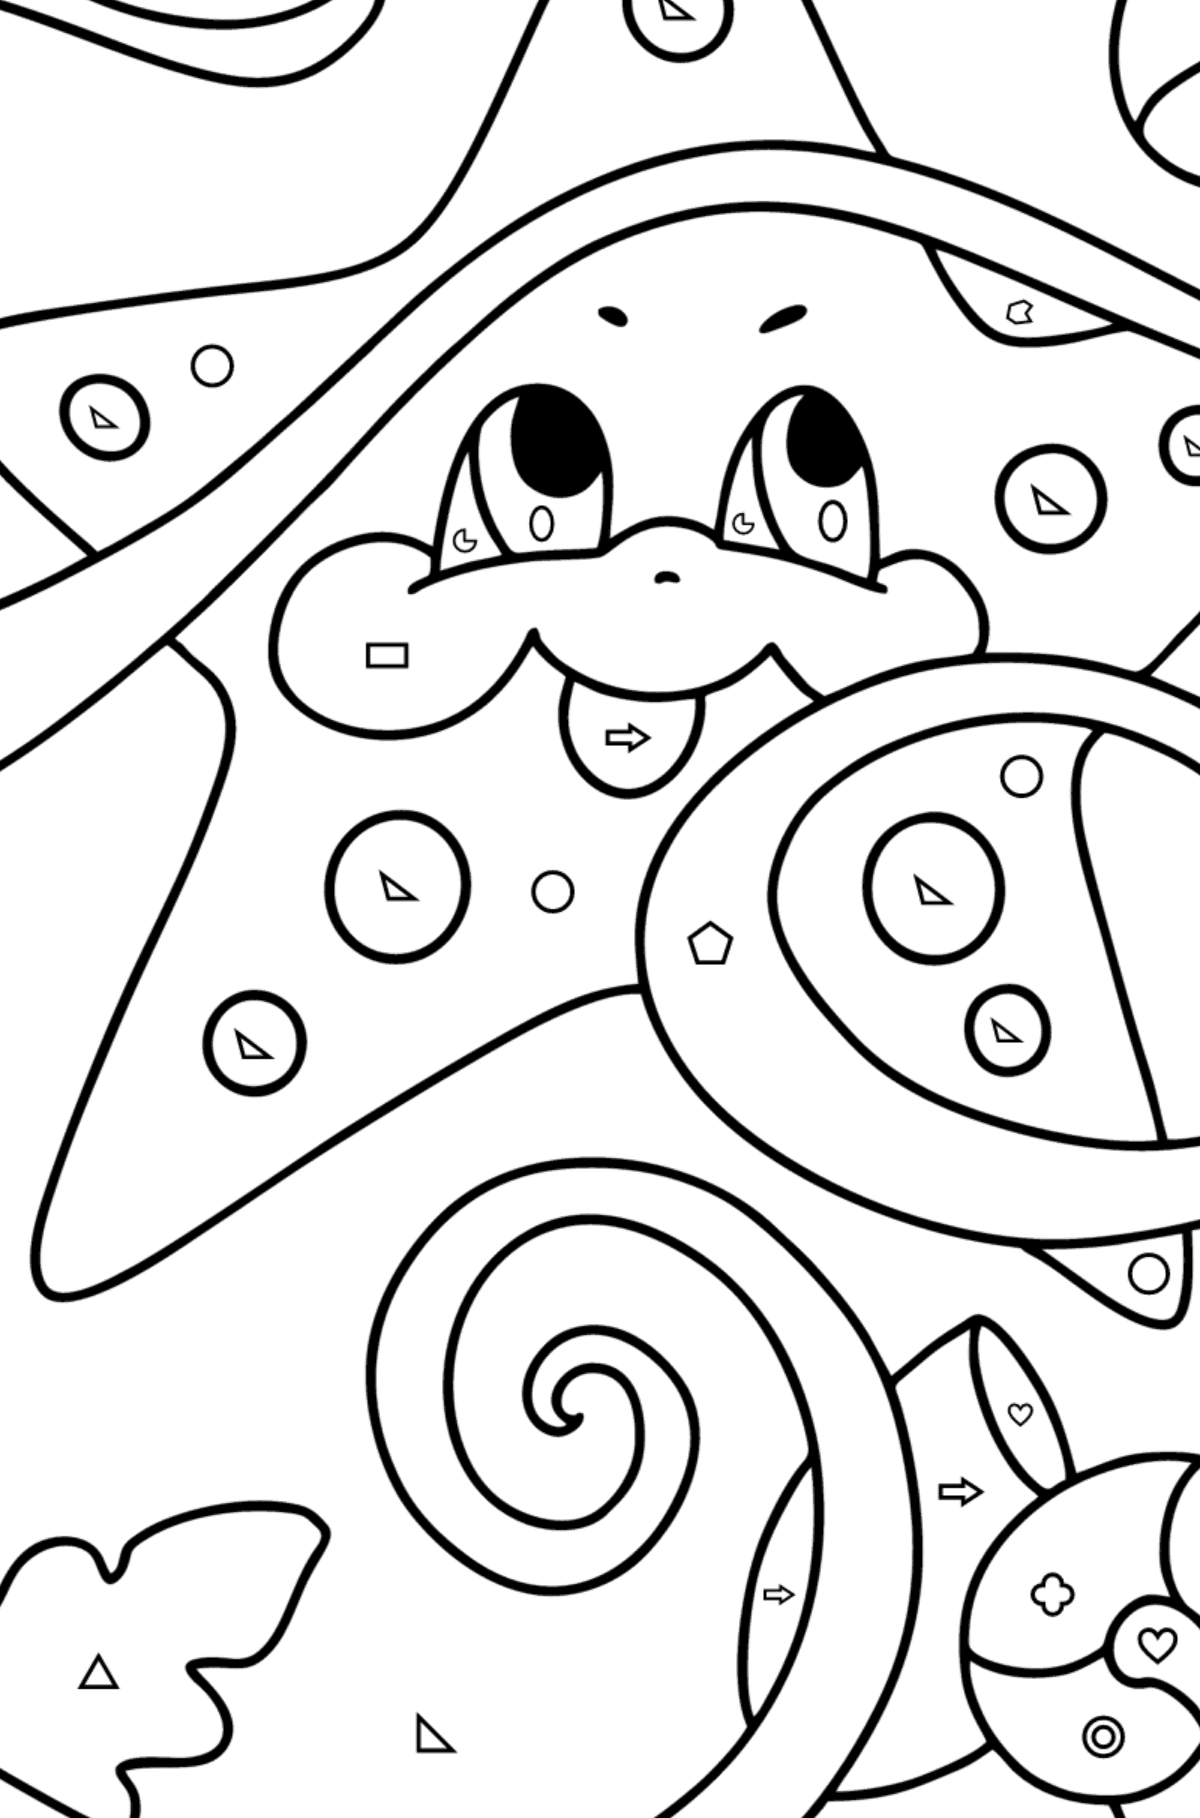 Coloriage Bébé étoile de mer - Coloriage par Formes Géométriques pour les Enfants